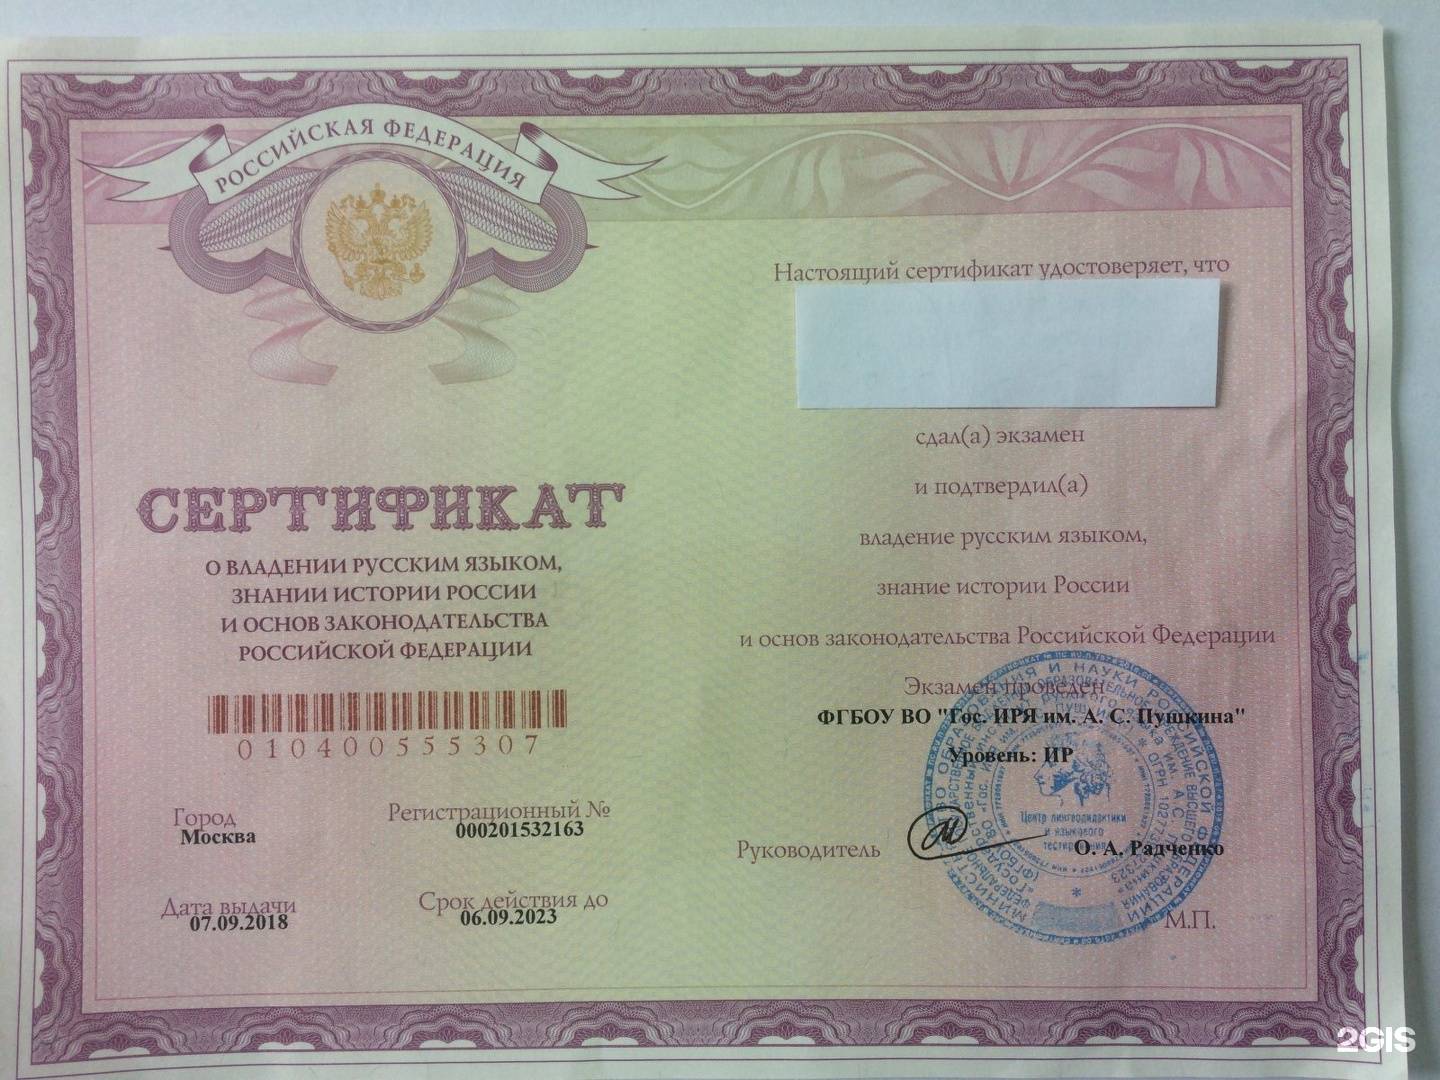 Сдача экзамена по русскому языку для получения гражданства россии